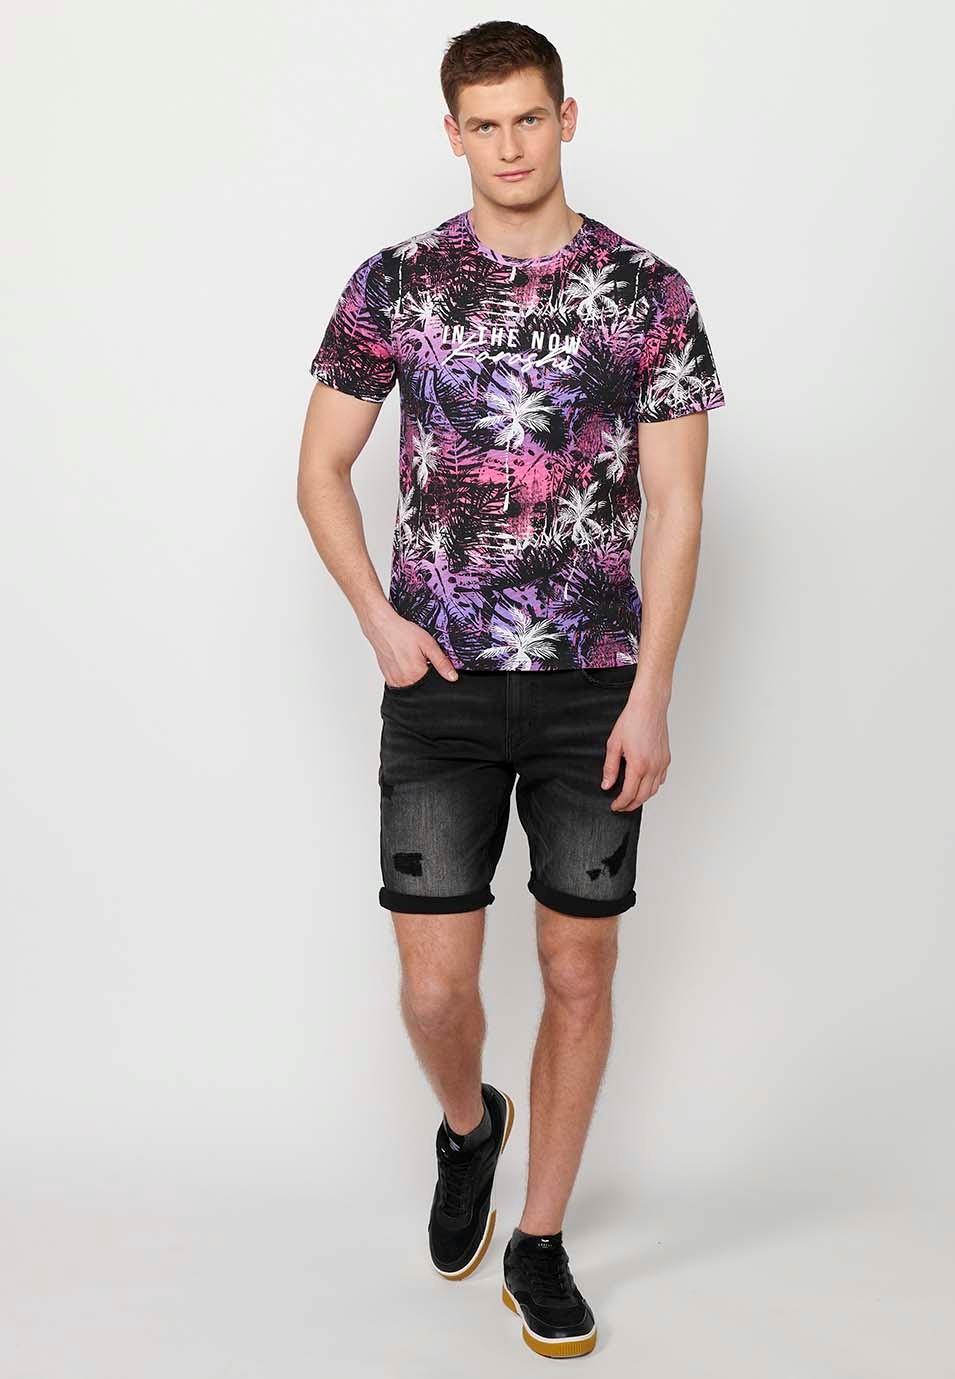 T-shirt manches courtes en coton imprimé tropical multicolore rose-violet pour homme